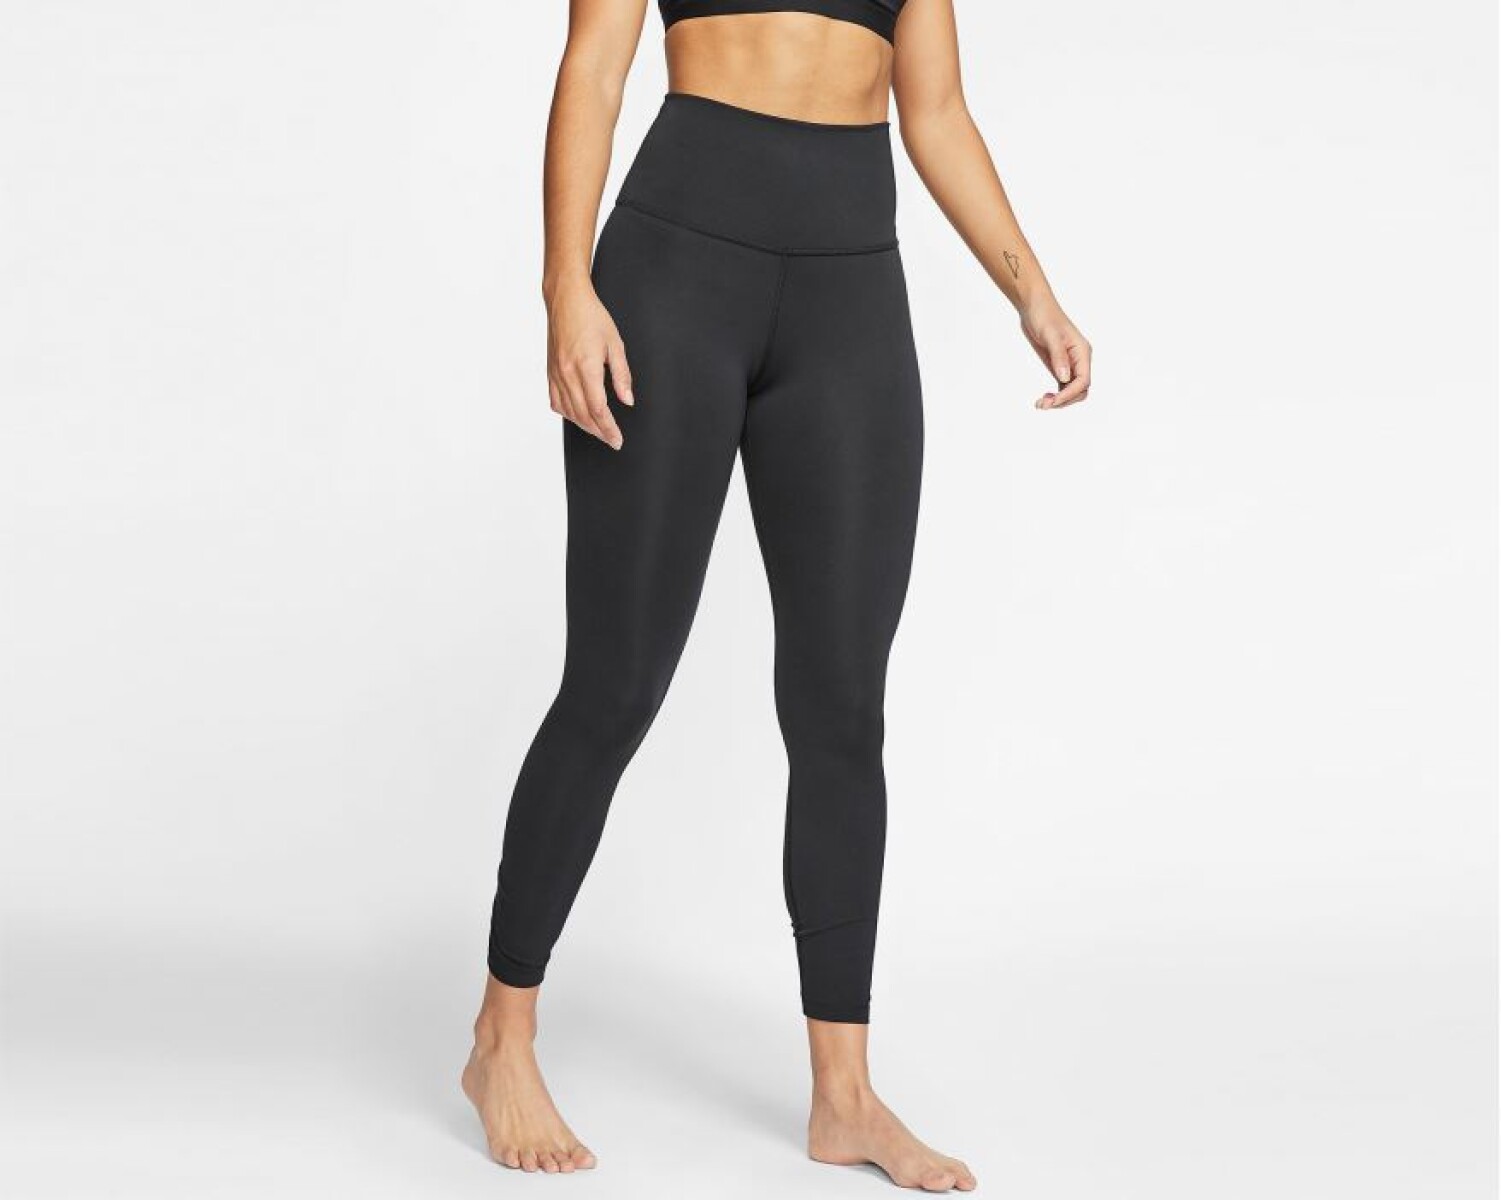 Calza Nike Yoga Dana RUCHE 7/8 TIGHT BLACK - S/C 